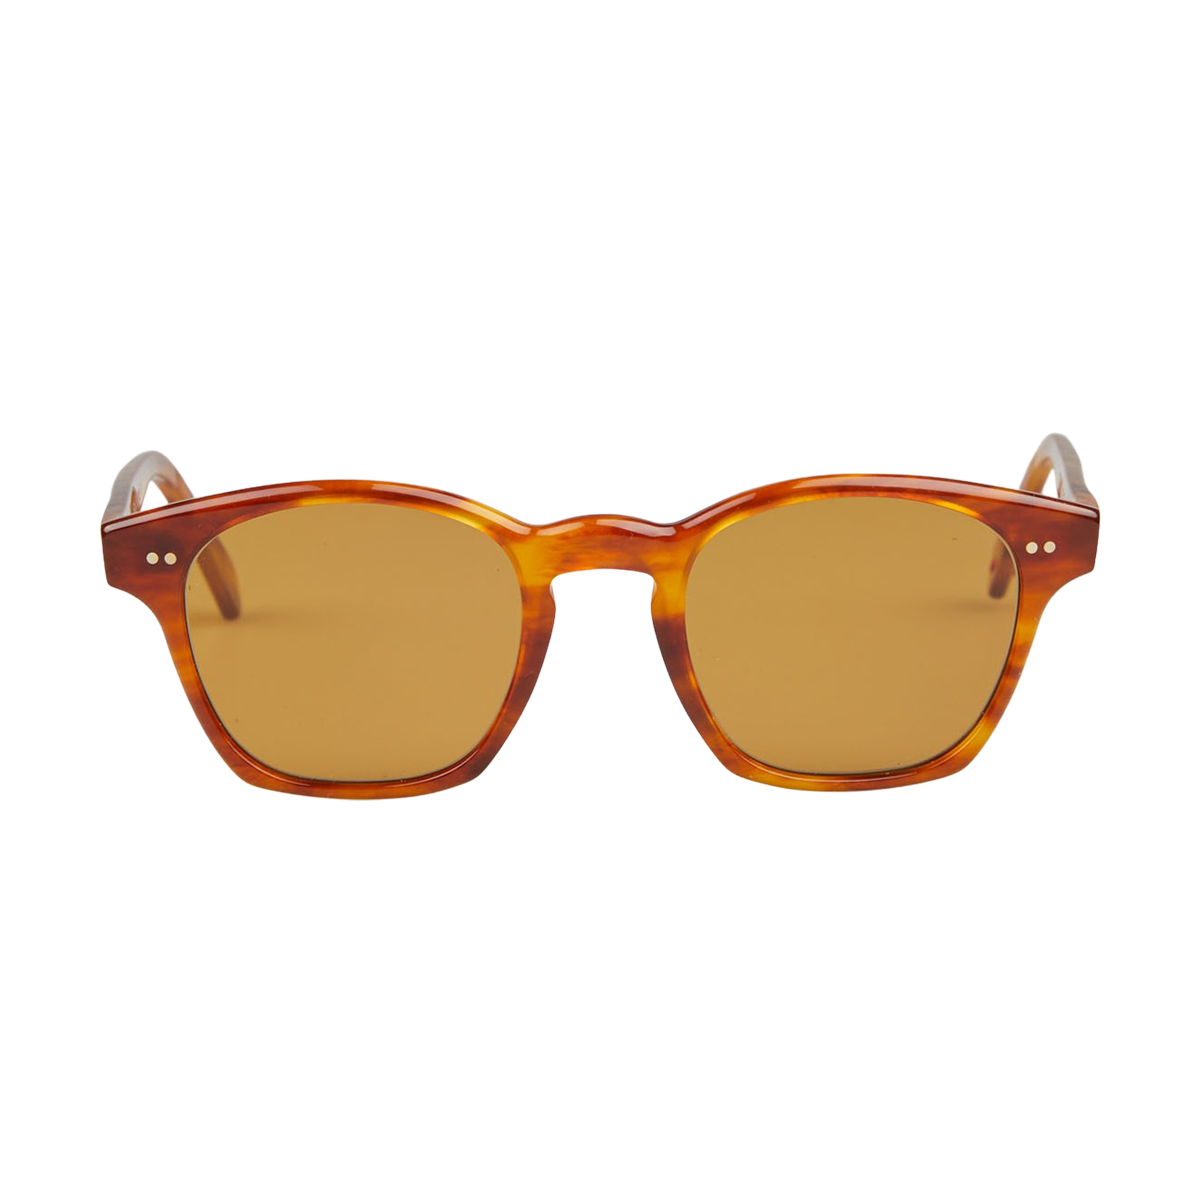 Lunettes Alf Light Tortoise A20.01.003 Sunglasses Front